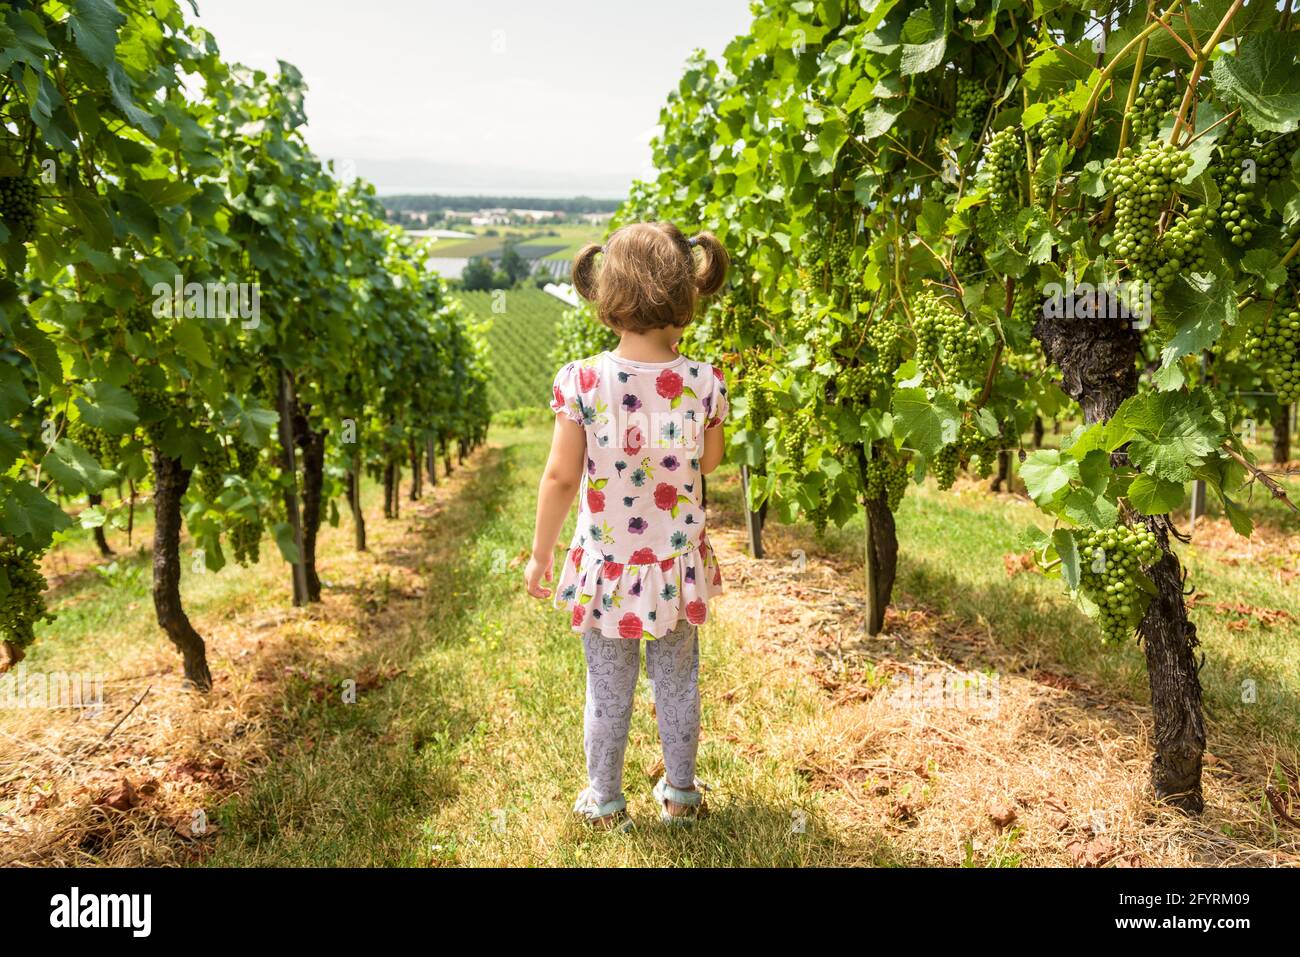 Bambino in vigna, bambina guarda il campo d'uva in azienda vinicola. Vista posteriore del capretto solitario alla piantagione di vite in estate. Concetto di vita rurale, futuro, Foto Stock